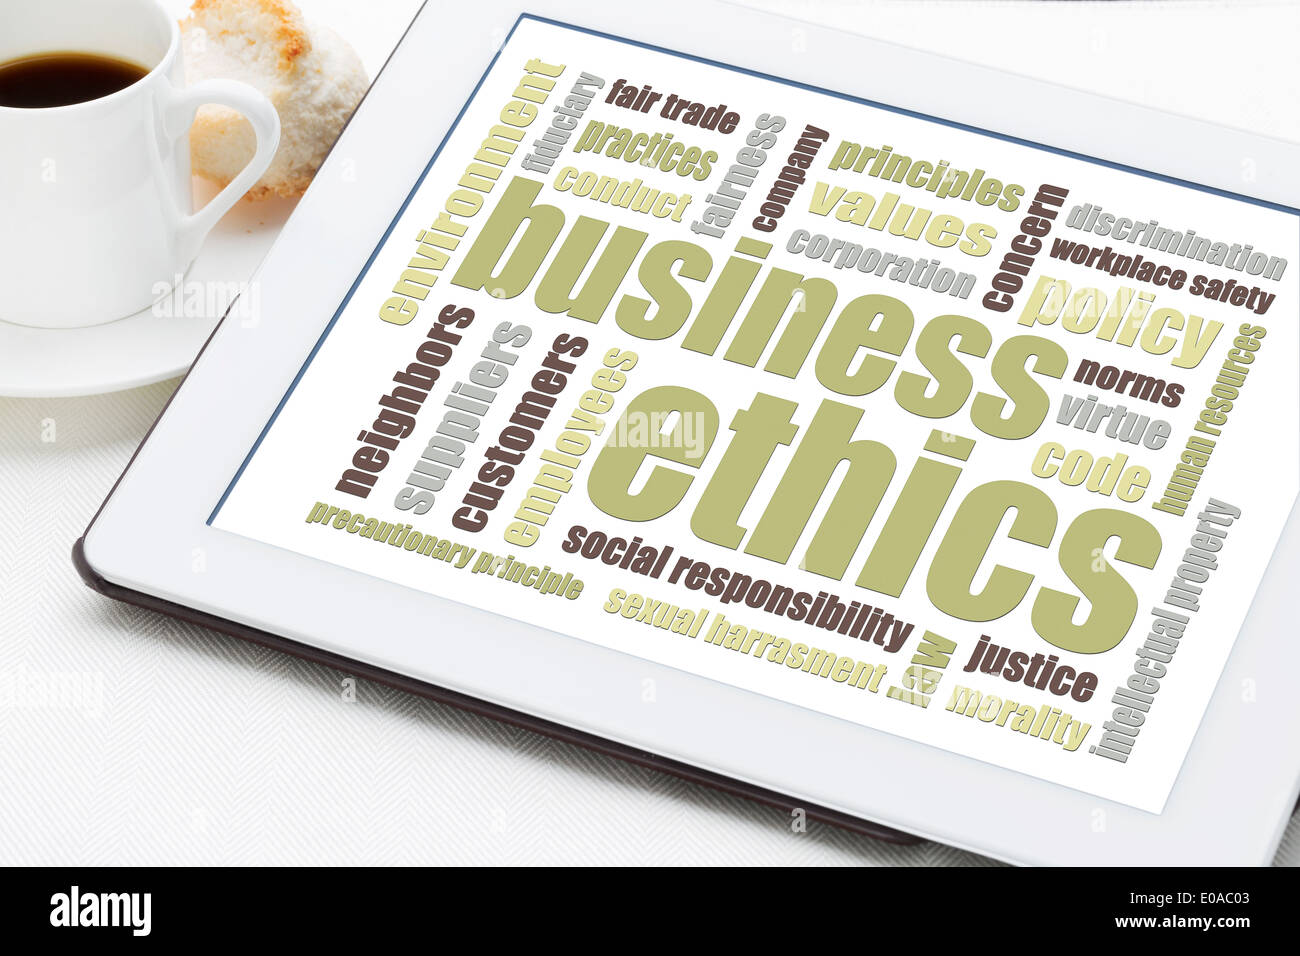 Business Ethics word cloud su una tavoletta digitale con una tazza di caffè Foto Stock